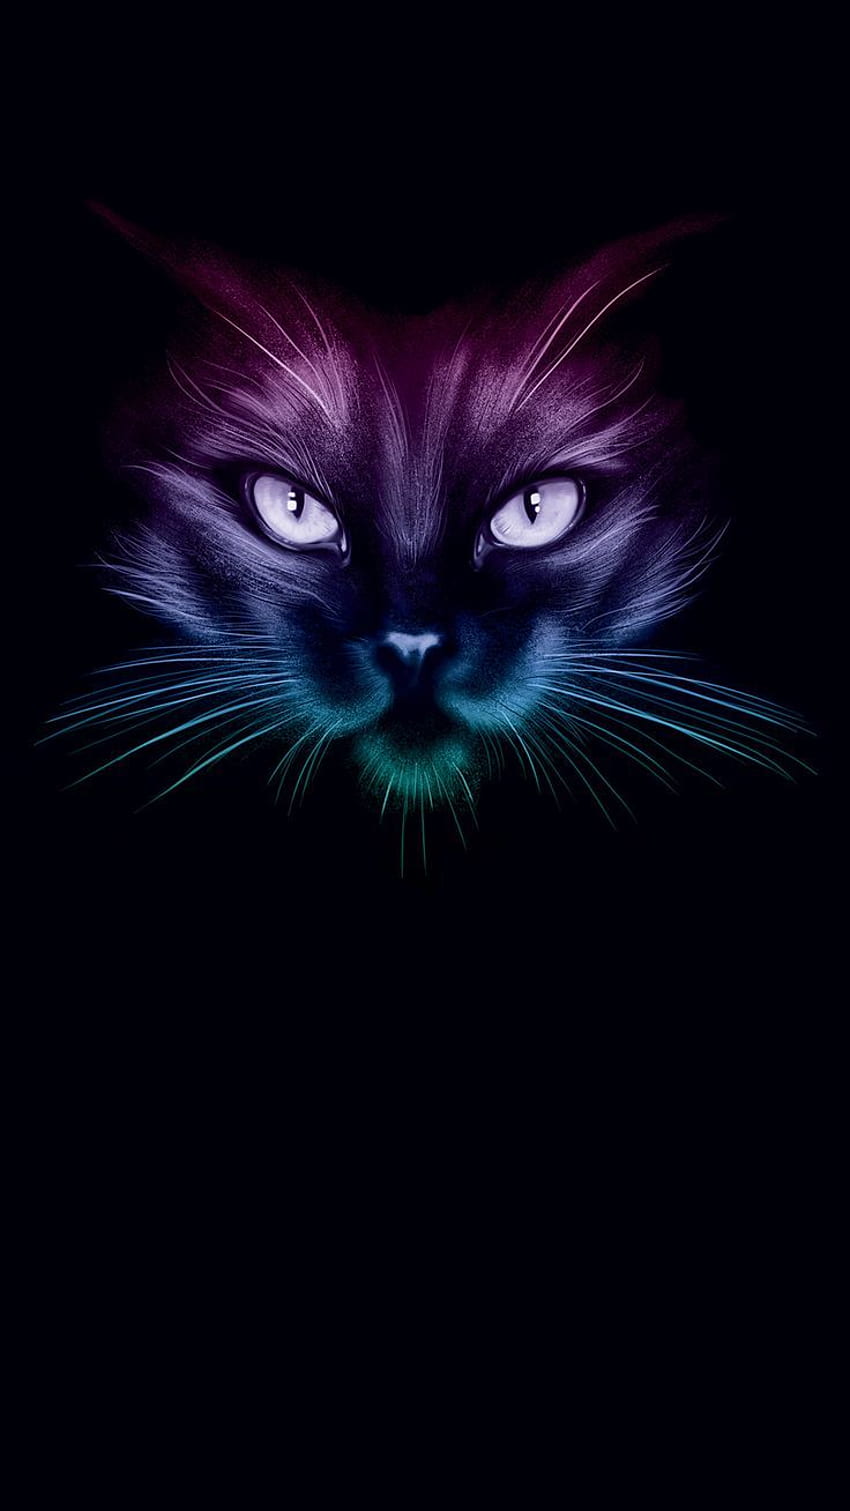 ♥ - Cats & Animals Background Wallpapers on Desktop Nexus (Image 2551222)